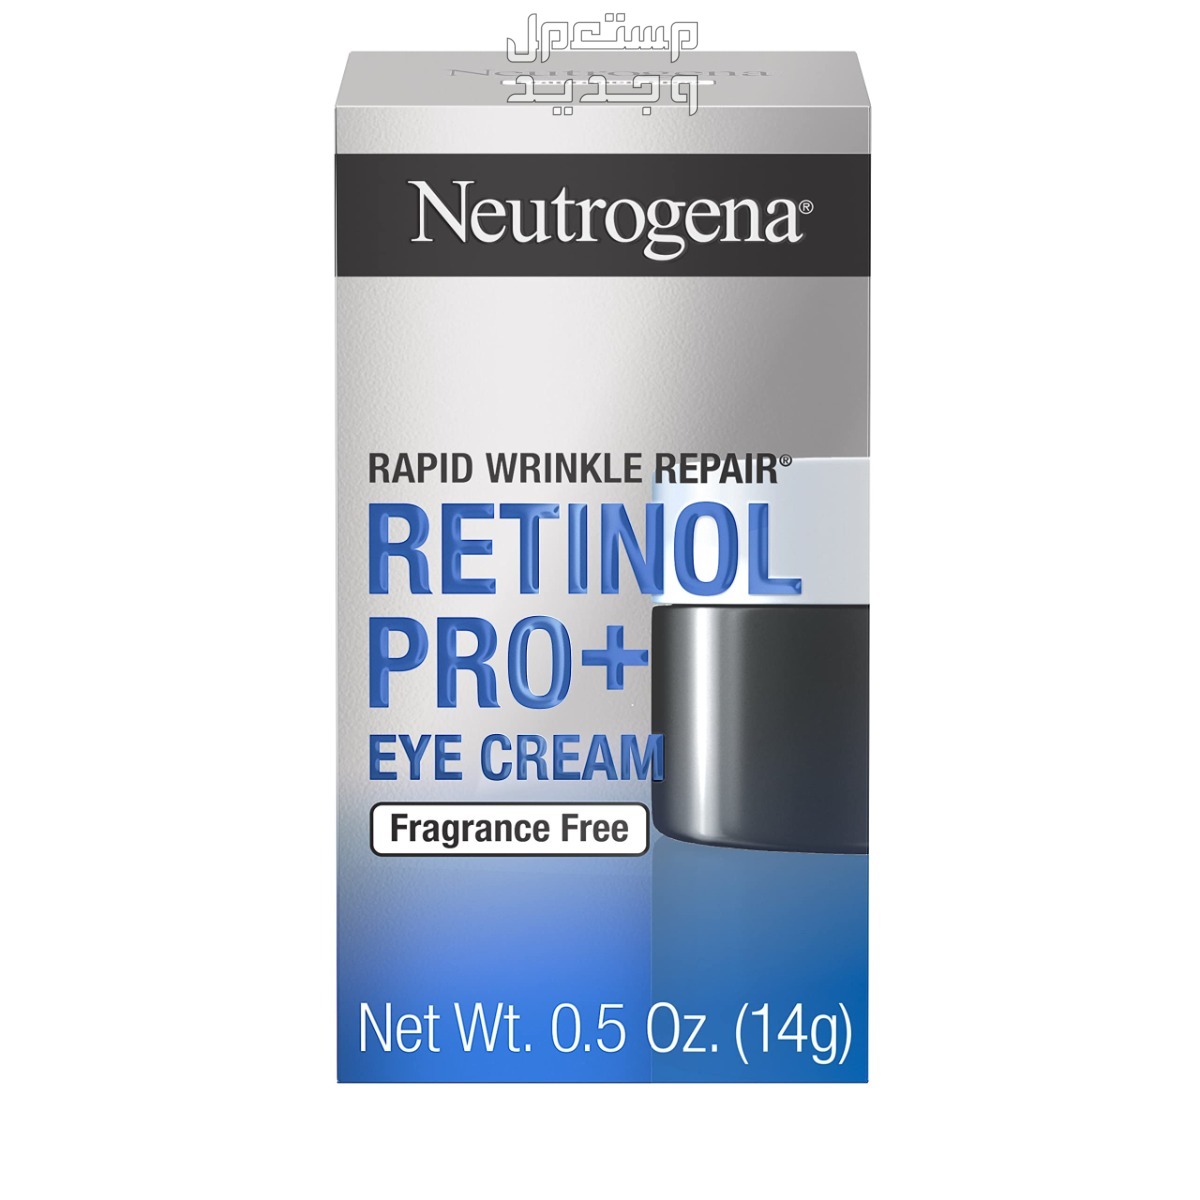 أفضل كريم للهالات السوداء تحت العين لعام 2023 في مصر كريم للهالات السوداء من Neutrogena Rapid Wrinkle Repair Retinol Pro+ Anti-Wrinkl